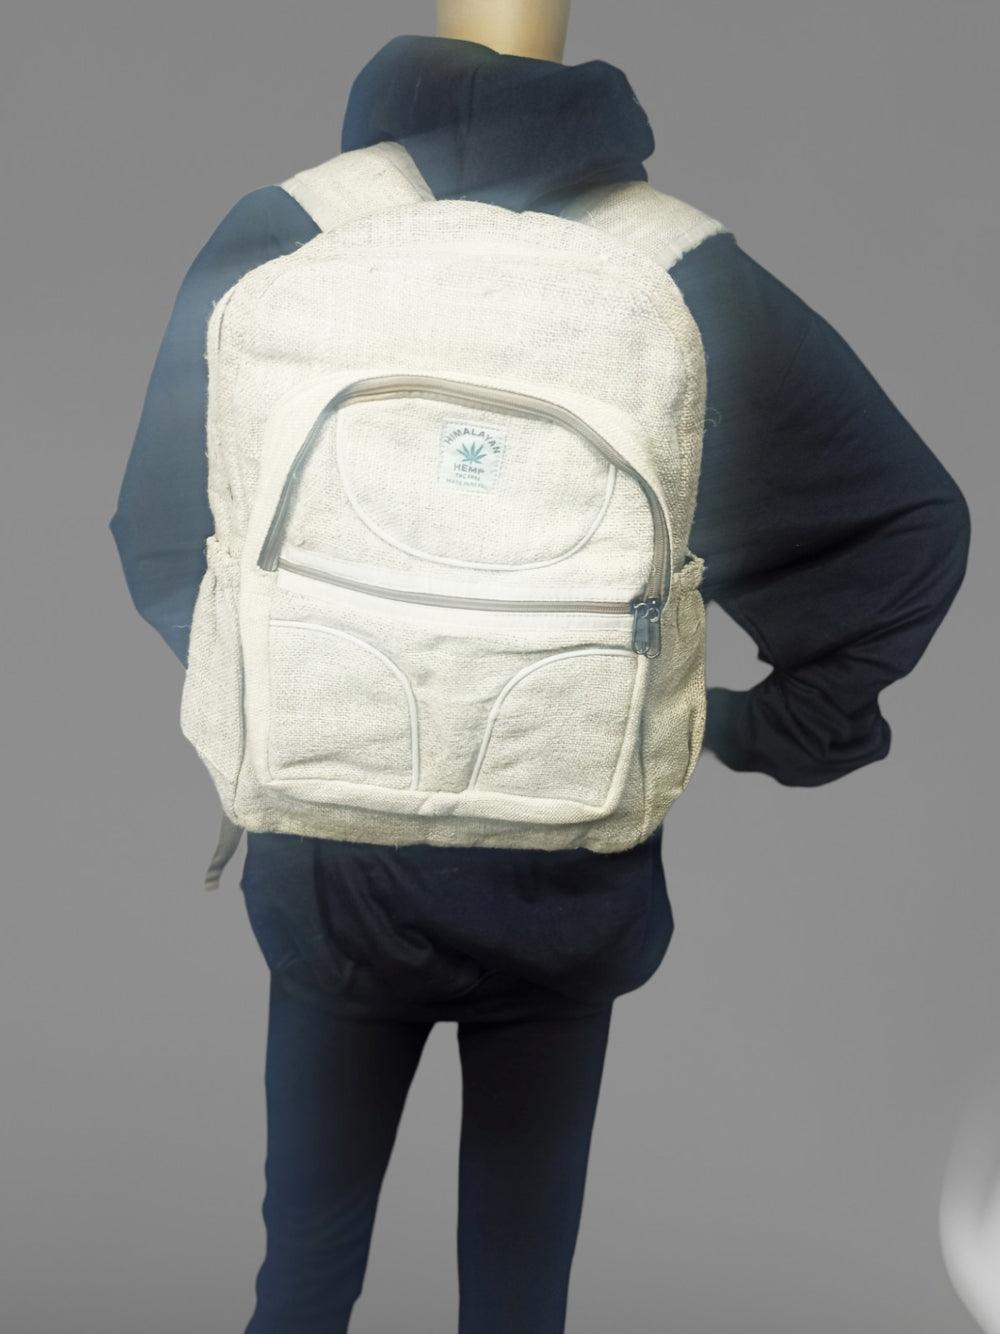 Hemp Laptop Bag | School & Travel Bag - ZANSKAR ARTS